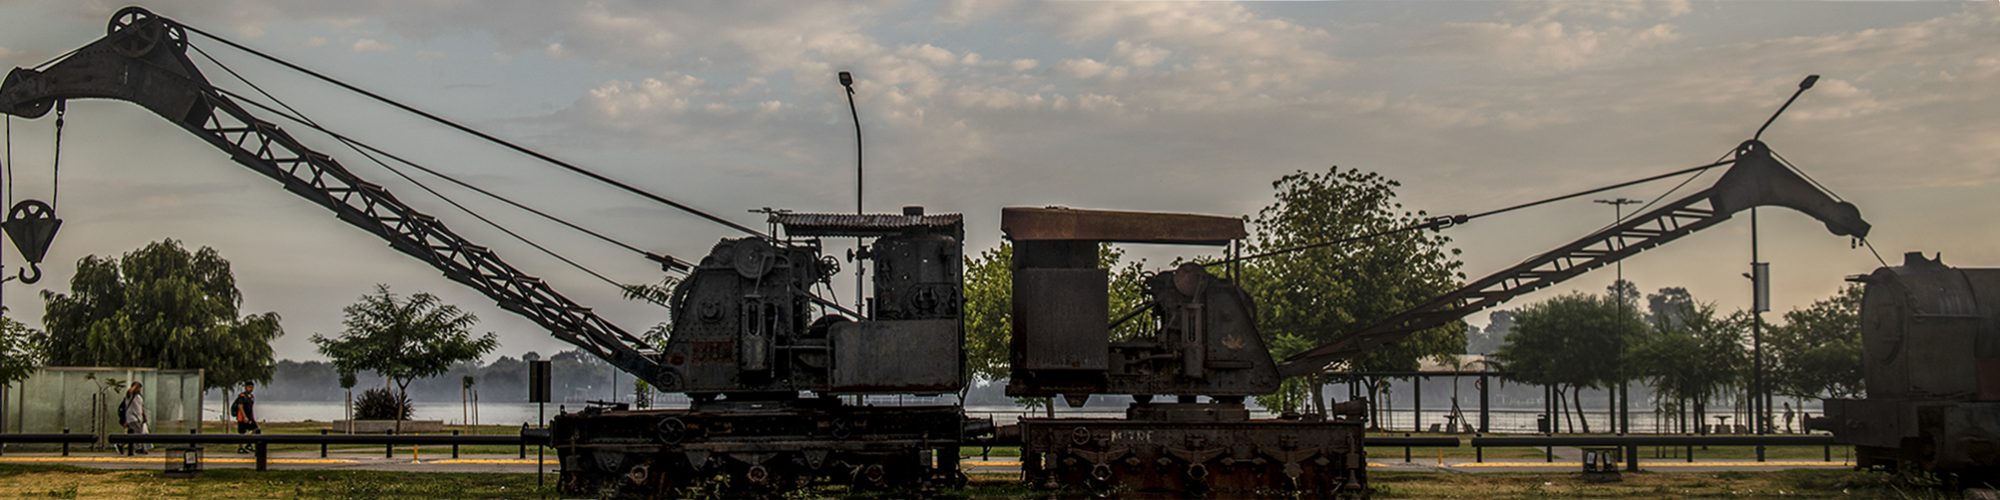 _DSC9716-Máquinas ferroviarias apaisada